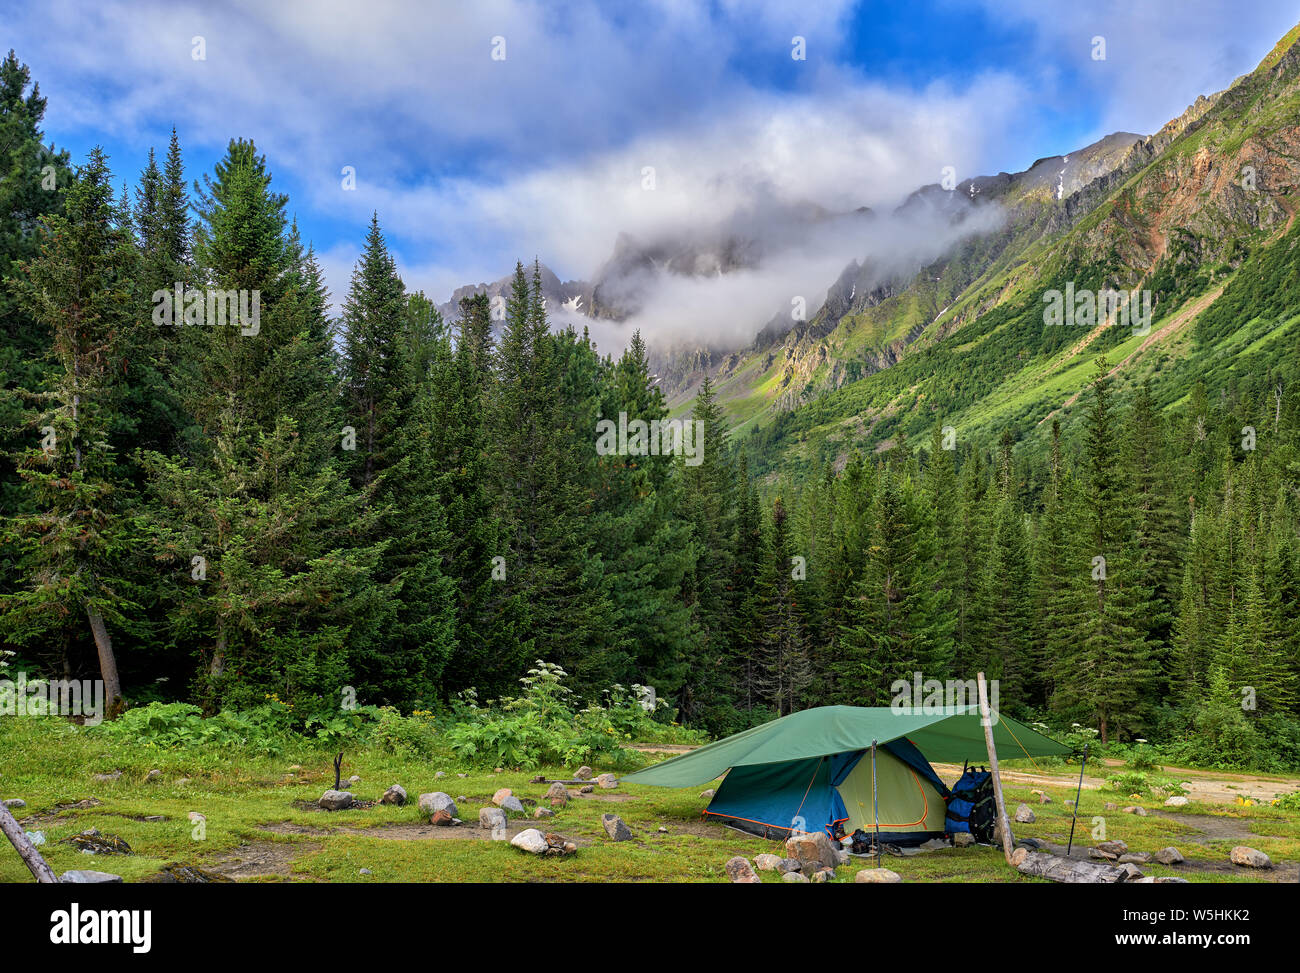 La randonnée. Une tente est situé à proximité de la forêt de montagne. Activités de plein air. La Sibérie orientale Banque D'Images